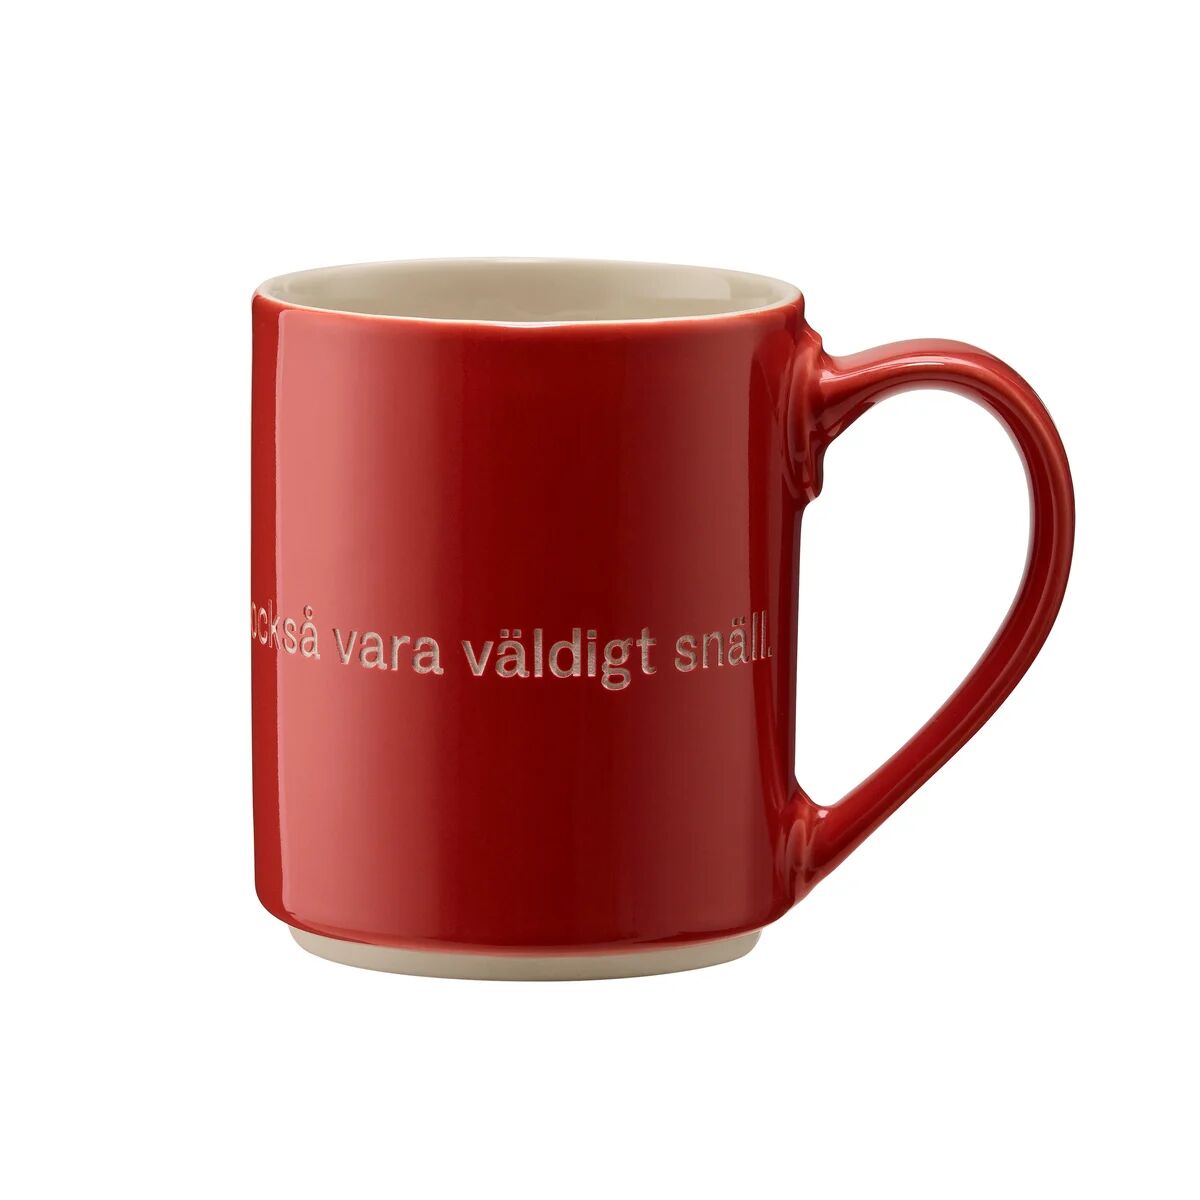 Design House Astrid Lindgren kopp, den som är väldigt stark rød-svensk